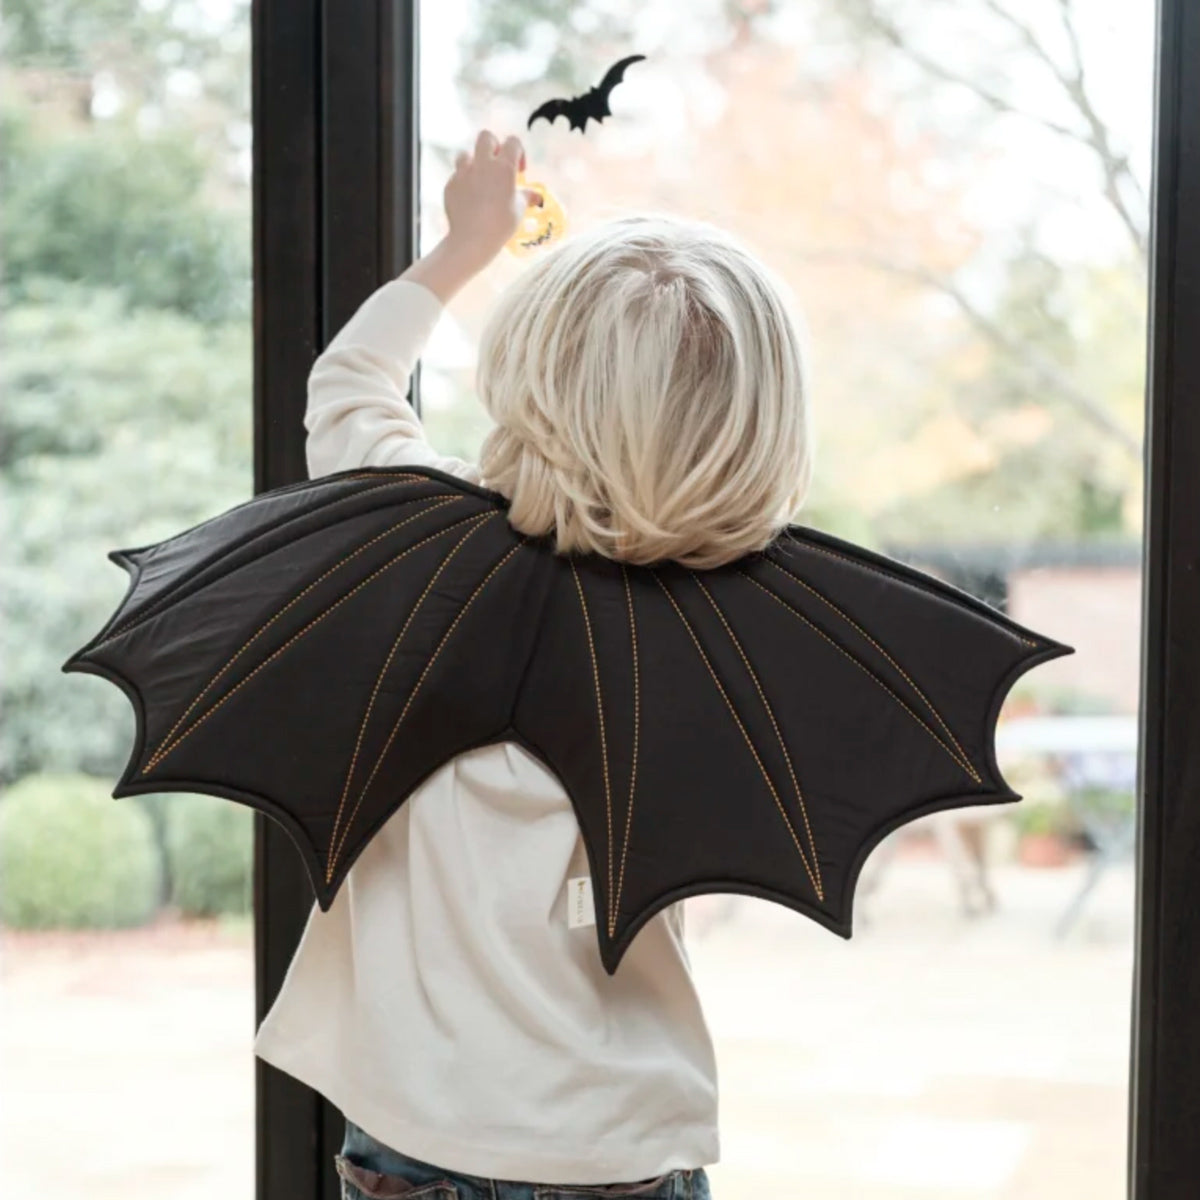 Dress-Up Bat Wings - Black